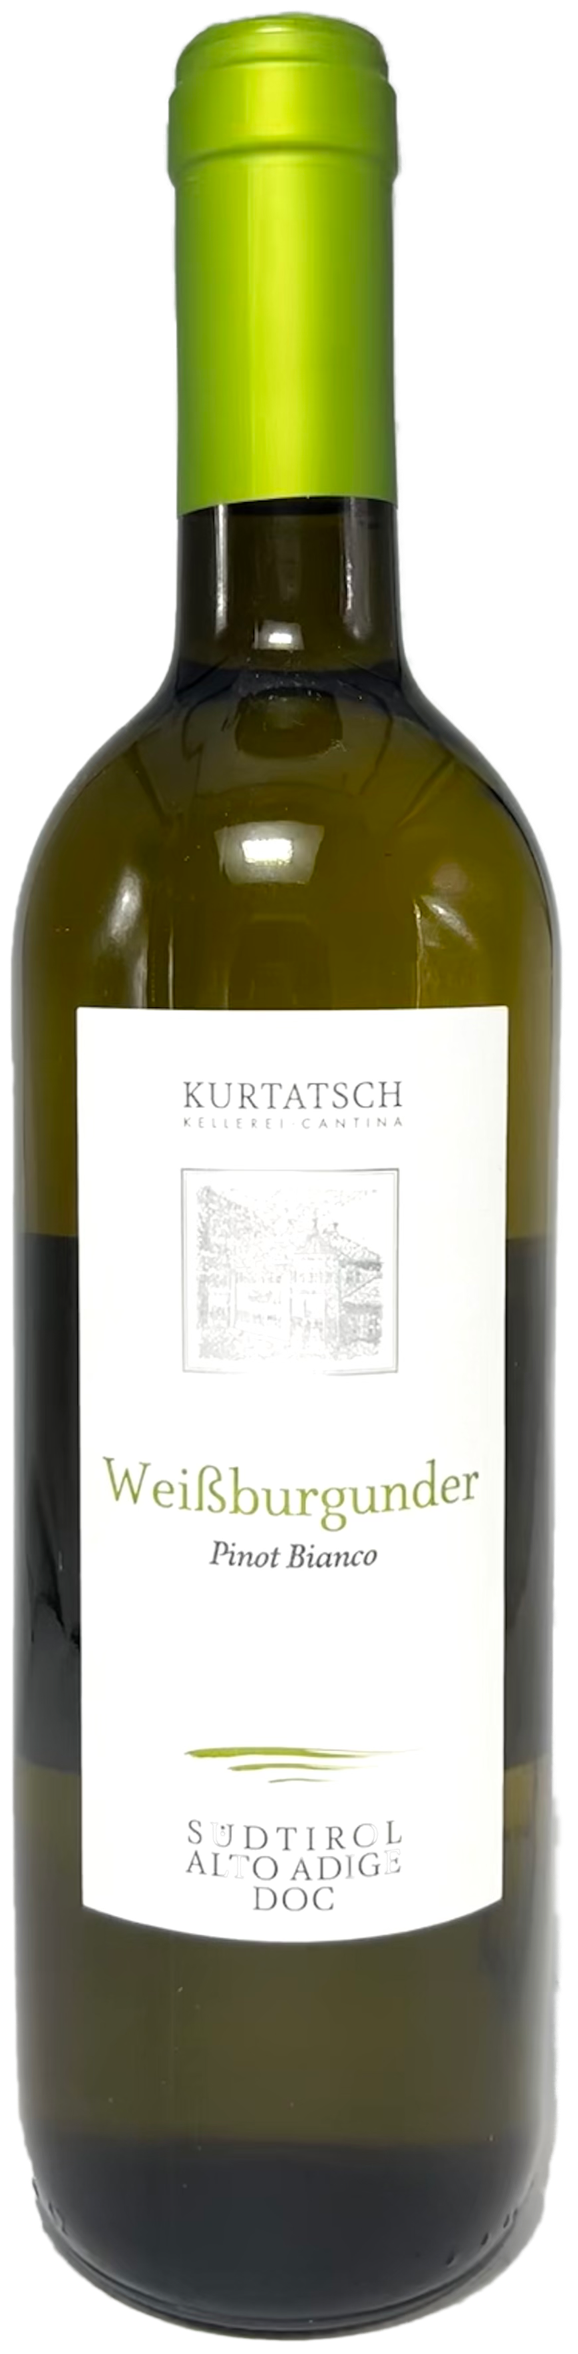 Südtirol Weissburgunder Pinot Bianco trocken Kurtatsch 13% vol. 0,75L